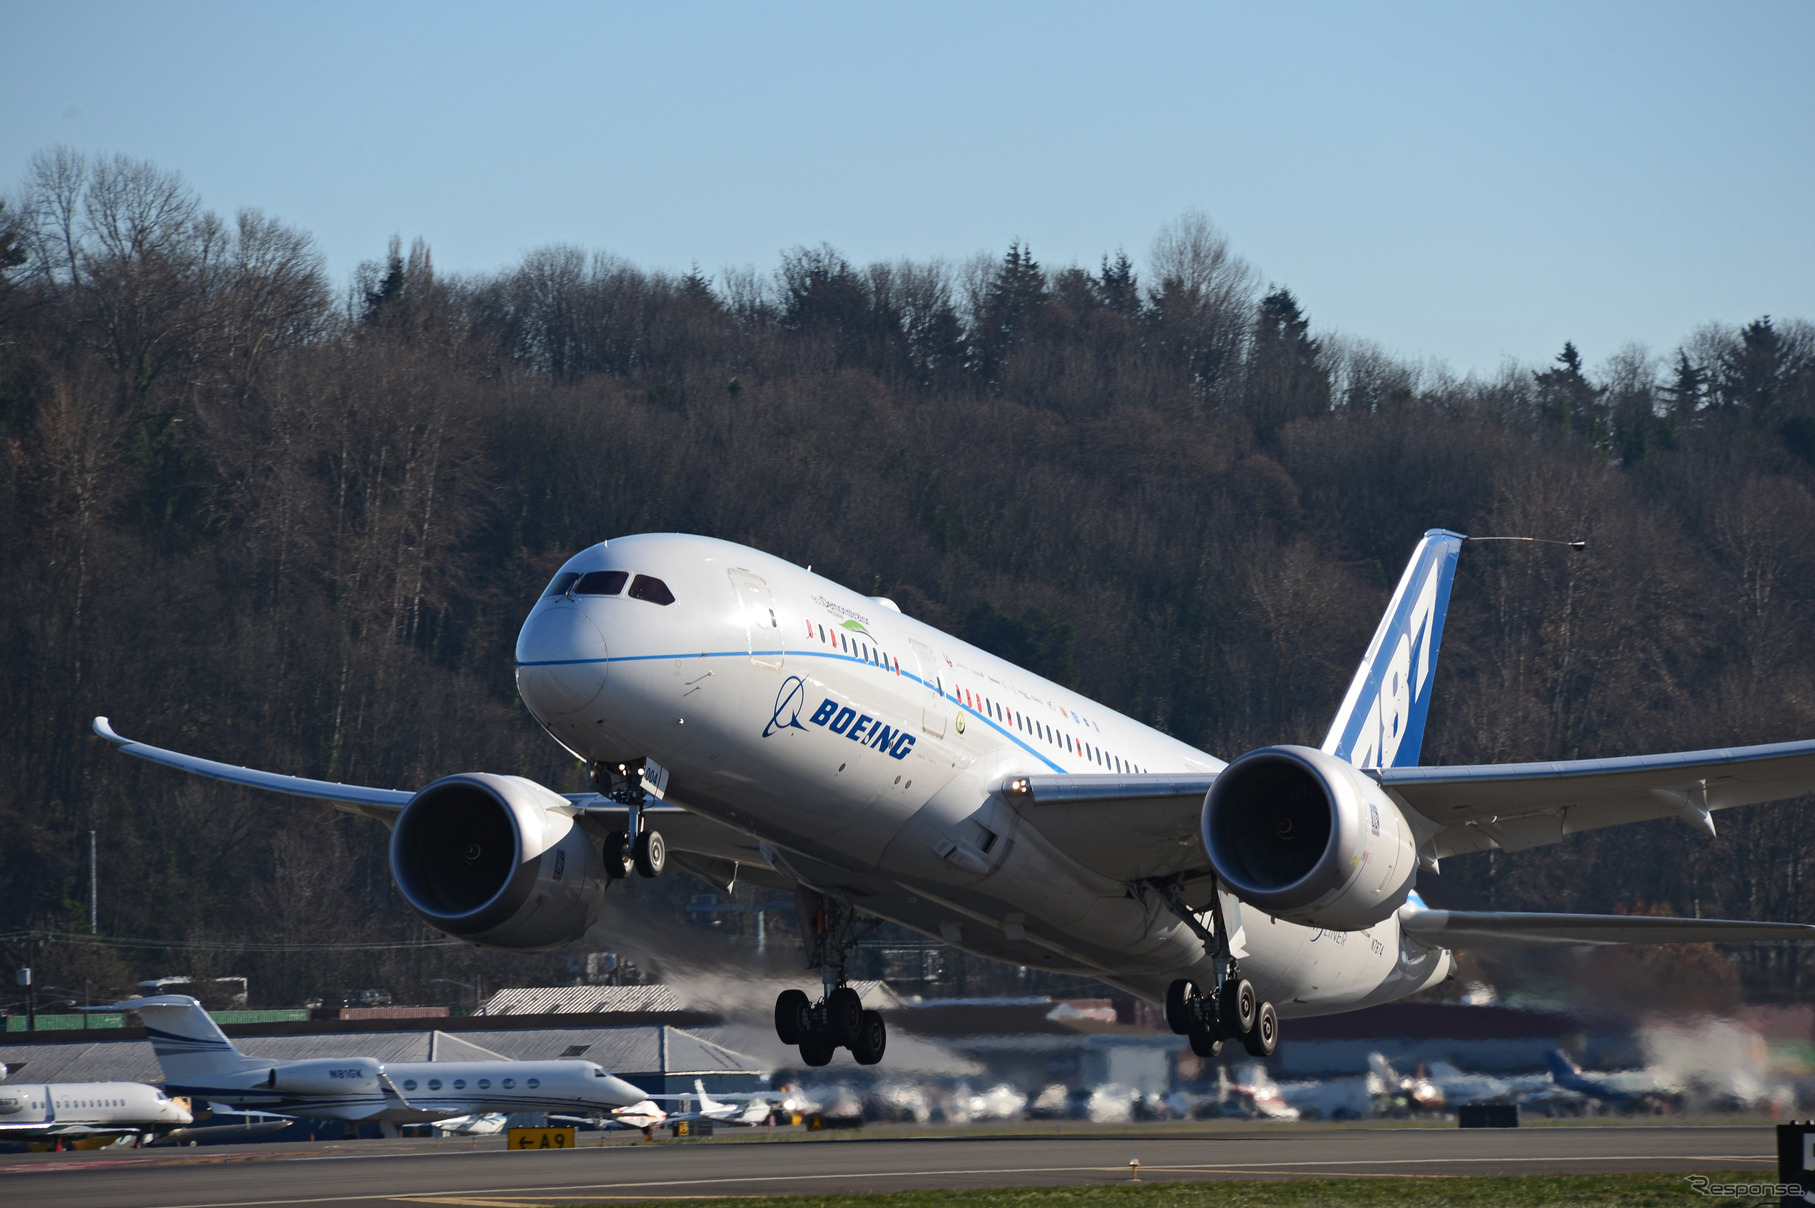 787型エコデモンストレーターにバイオ燃料「グリーンディーゼル」を使用してフライトテストを実施